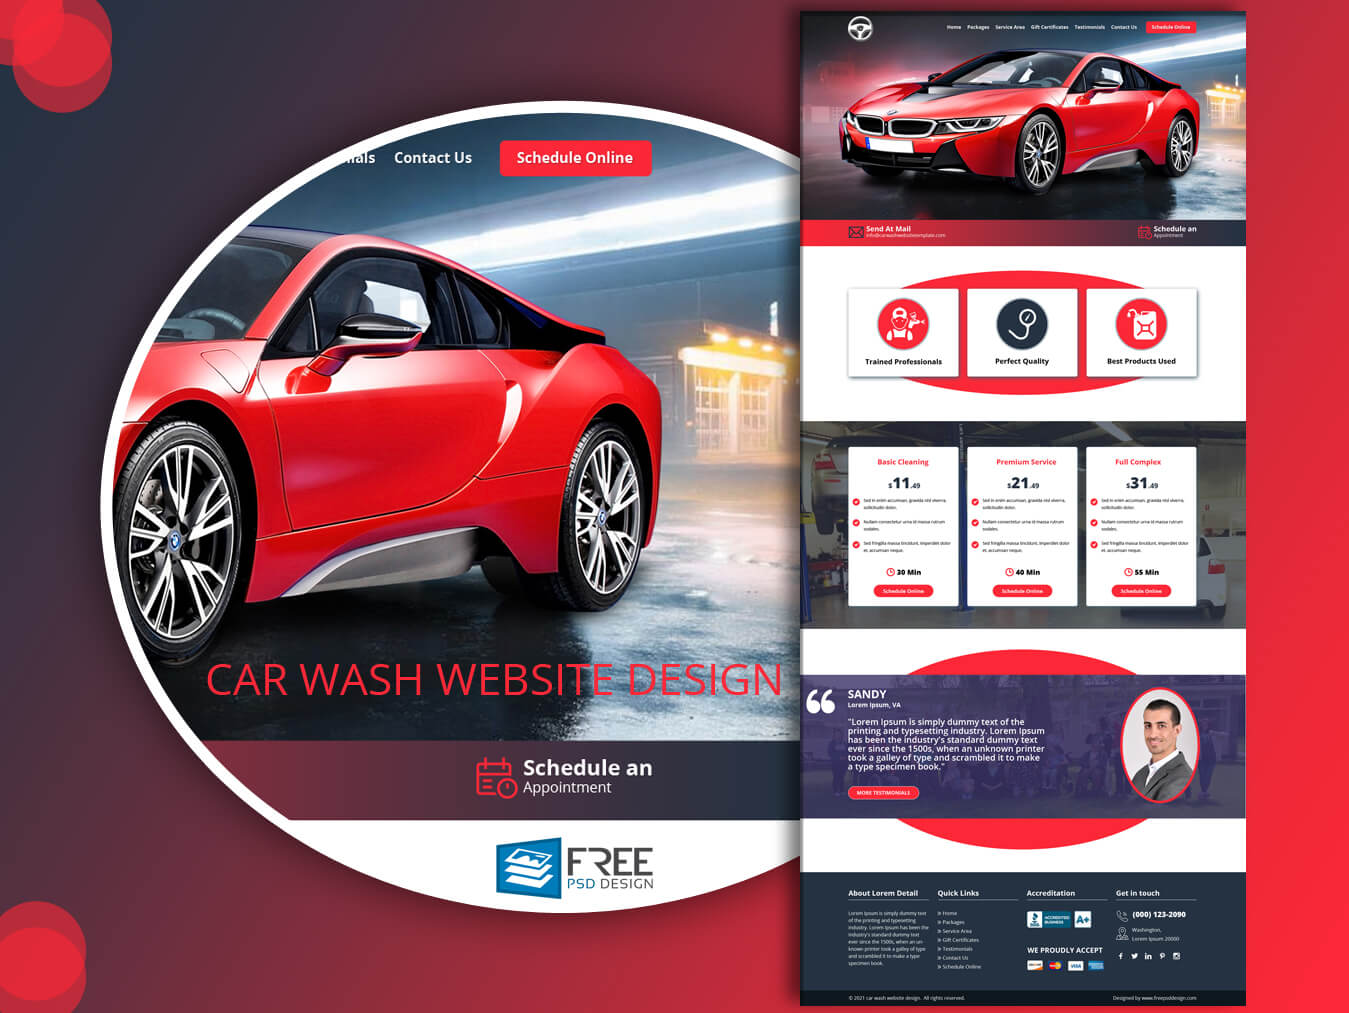 Car wash website design